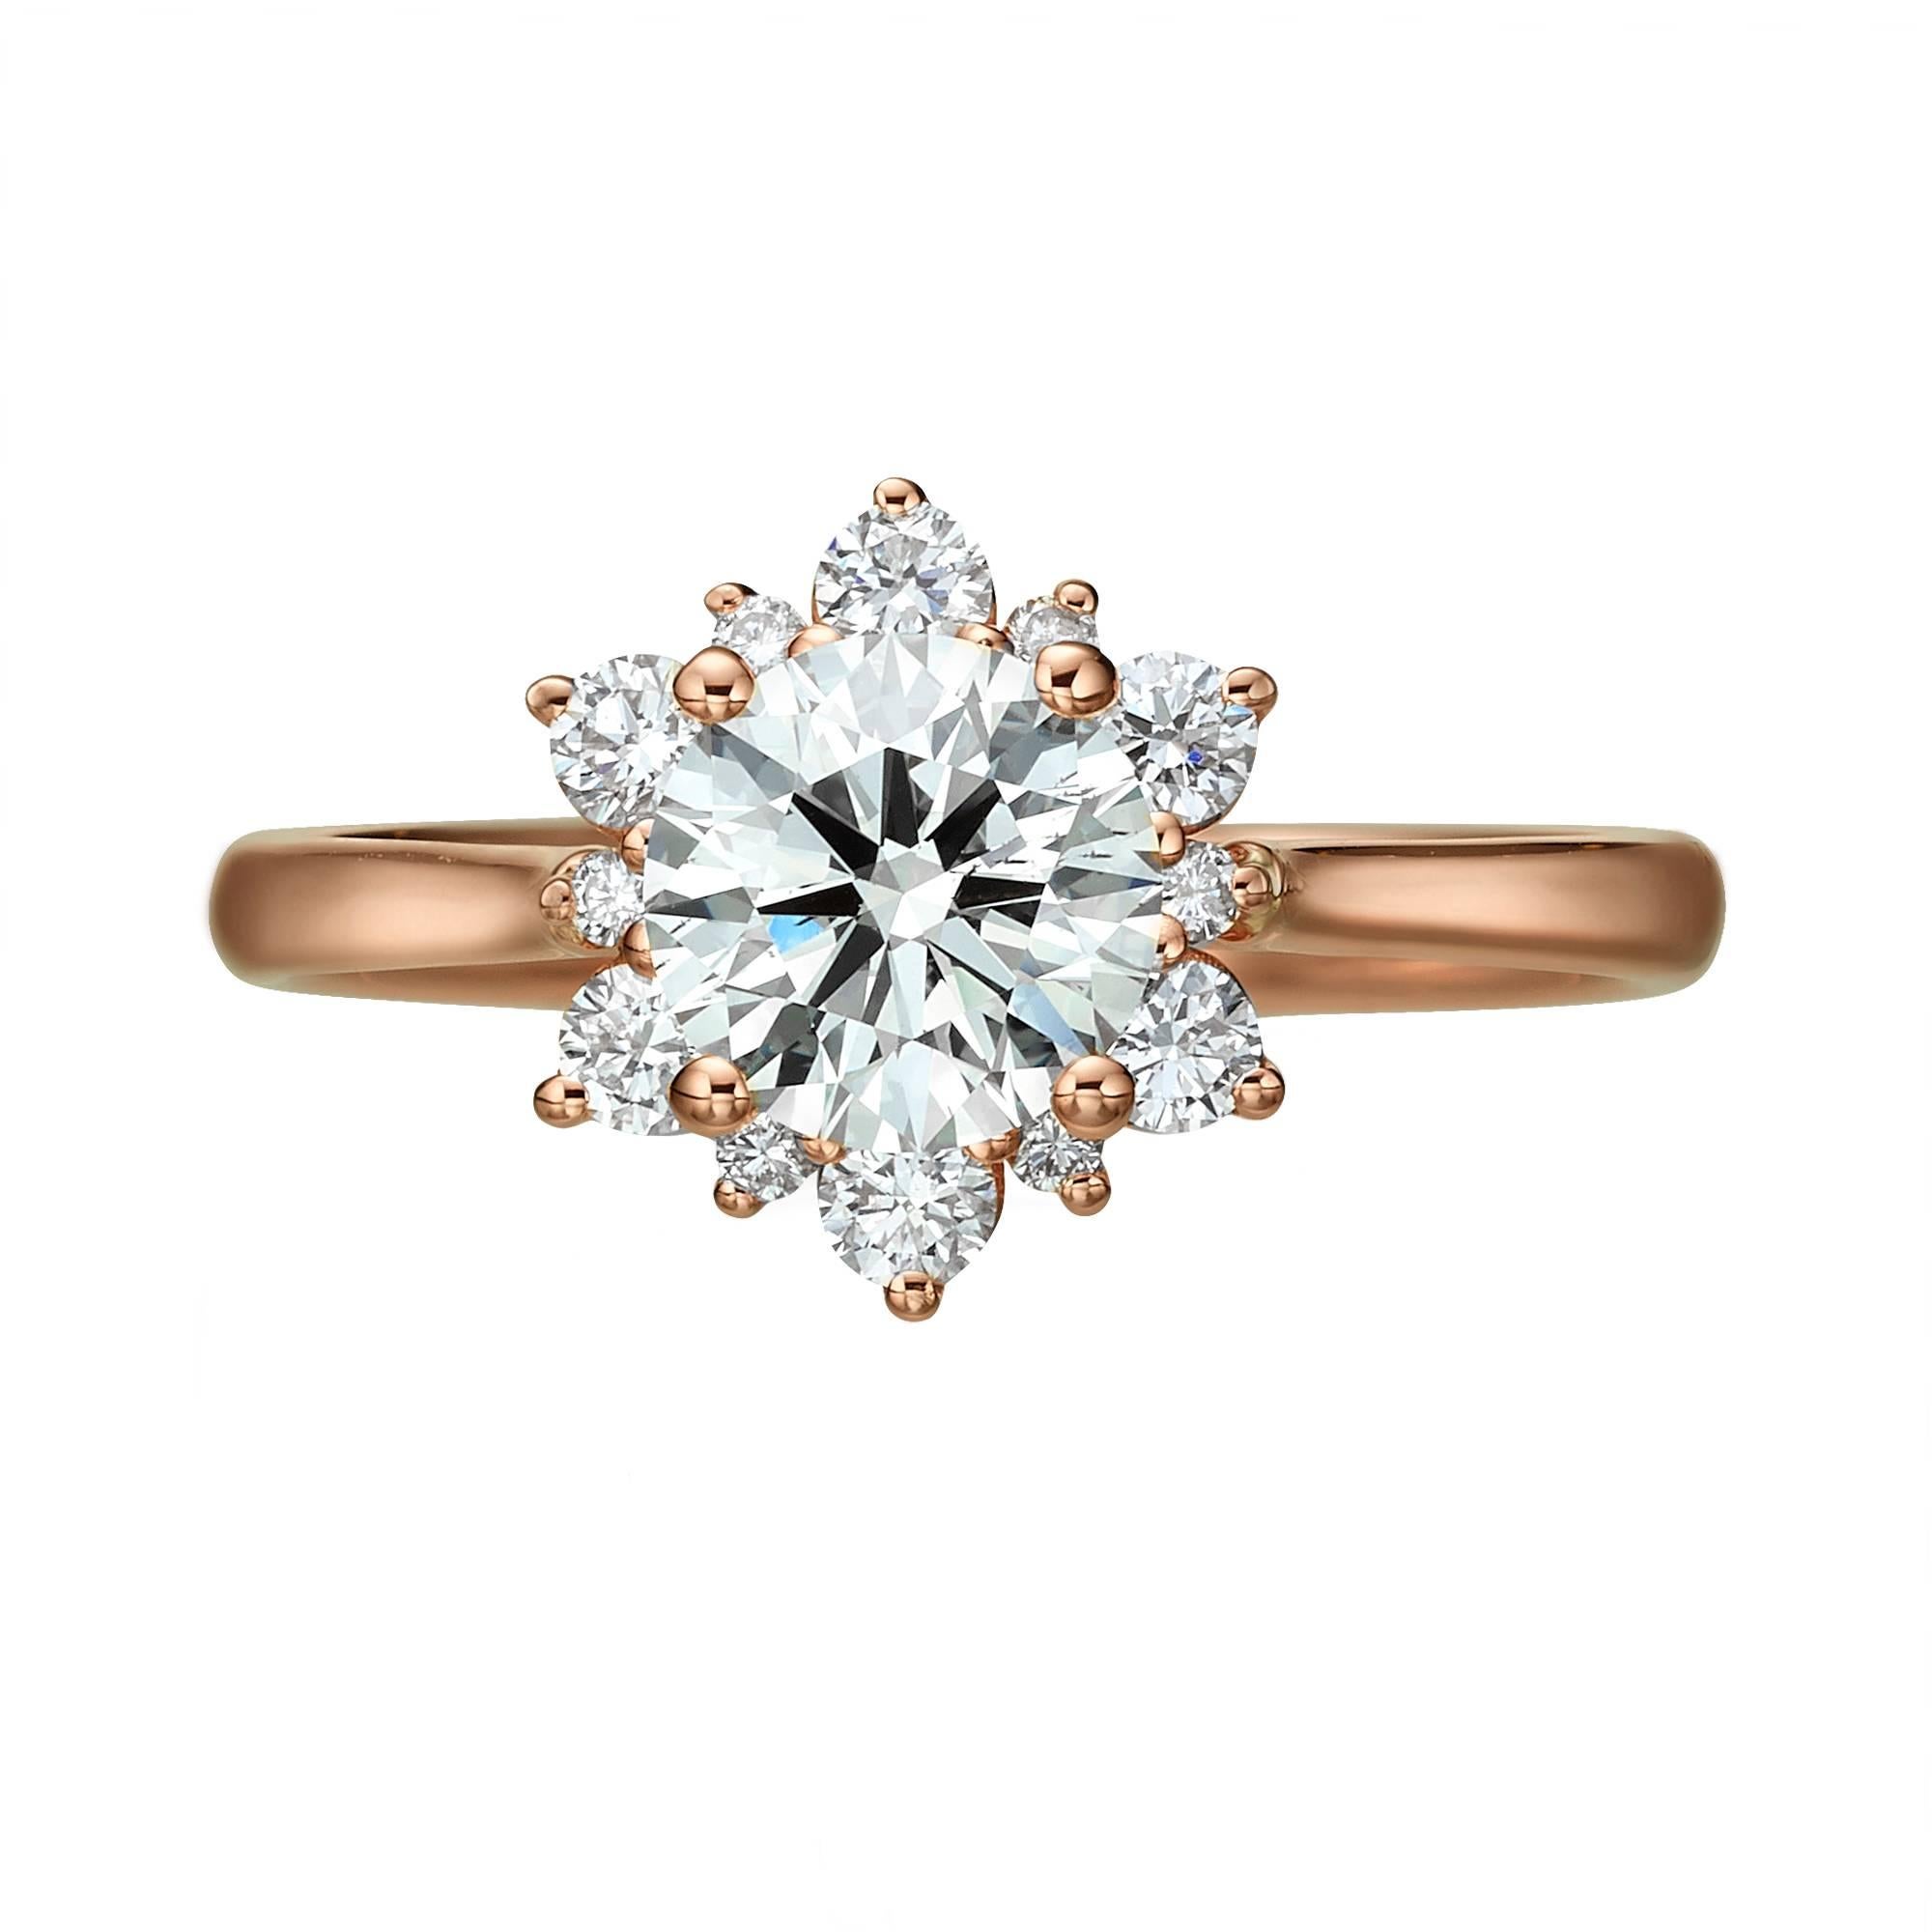 Bague en diamant certifié GIA fabriquée à la main, comportant un diamant rond de 1,00 carat de couleur H et de pureté SI2. 
Le diamant est serti de 12 diamants ronds brillants d'un total de 0,30 carat  Poids du diamant. Cette bague classique unique